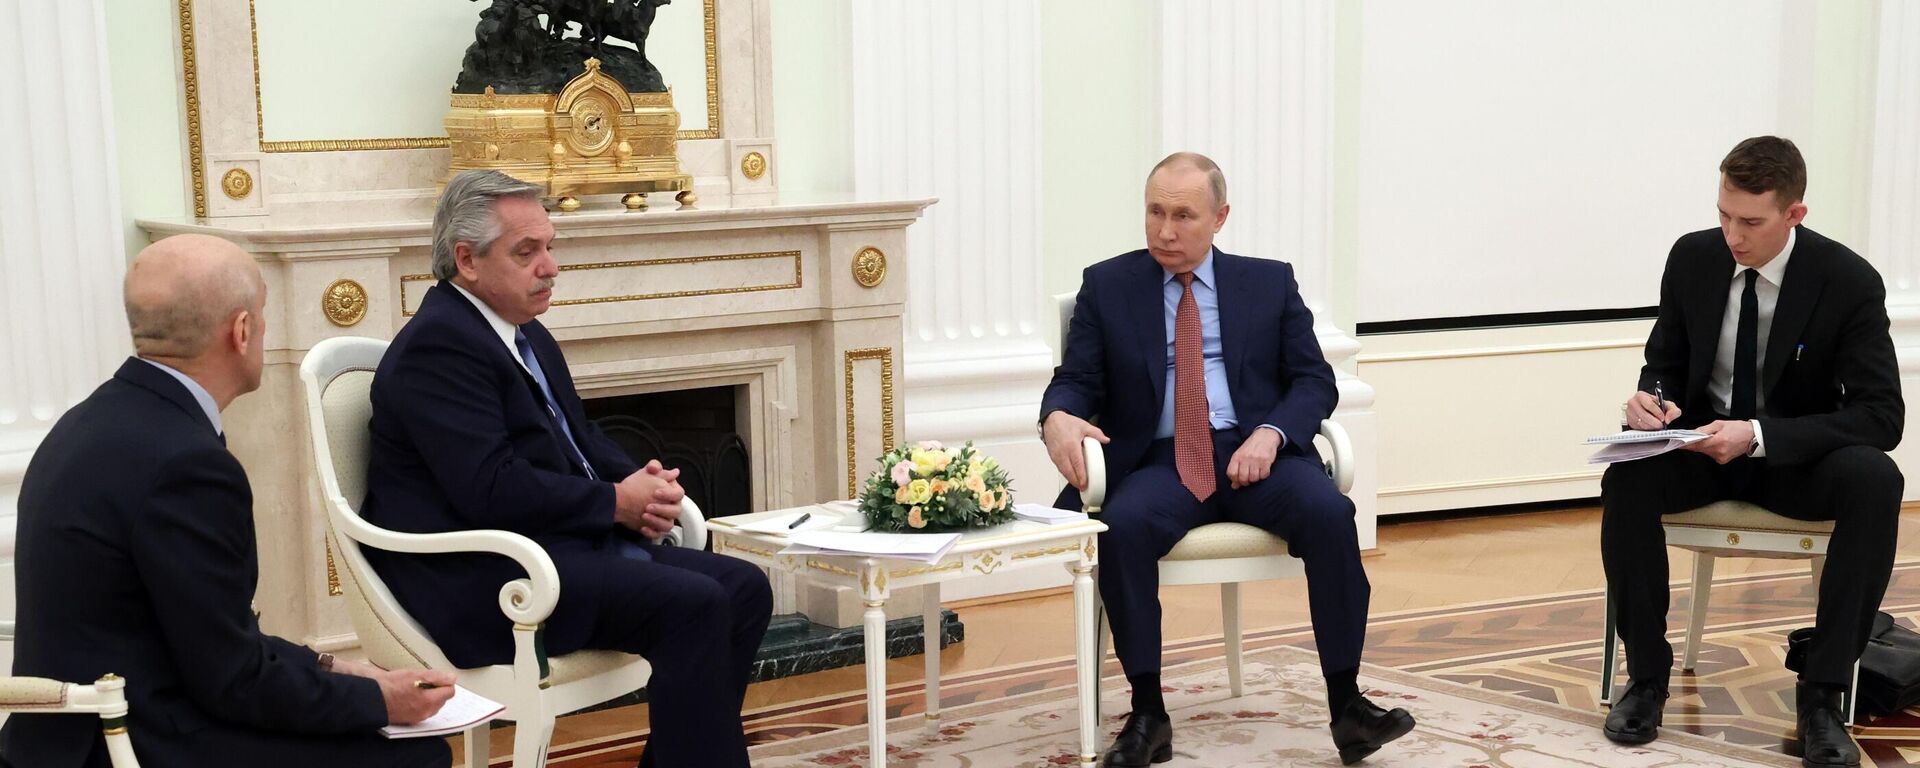 El presidente ruso Vladimir Putin y el presidente argentino Alberto Fernández (segundo por la izquierda) durante una reunión en el Kremlin - Sputnik Mundo, 1920, 04.02.2022